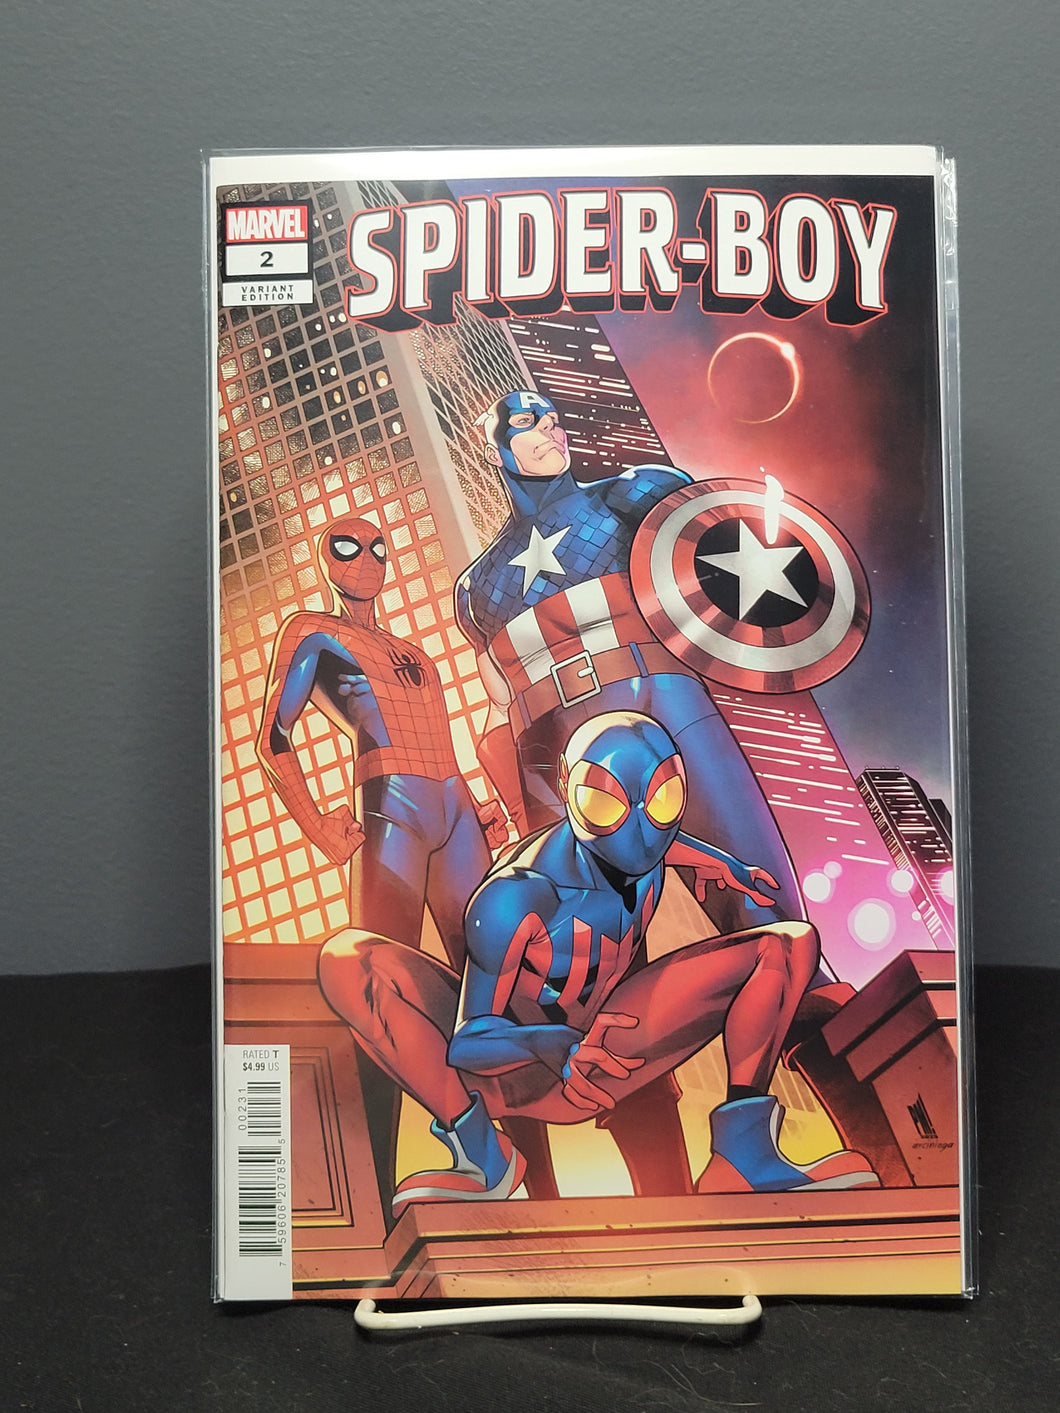 Spider-Boy #2 Variant